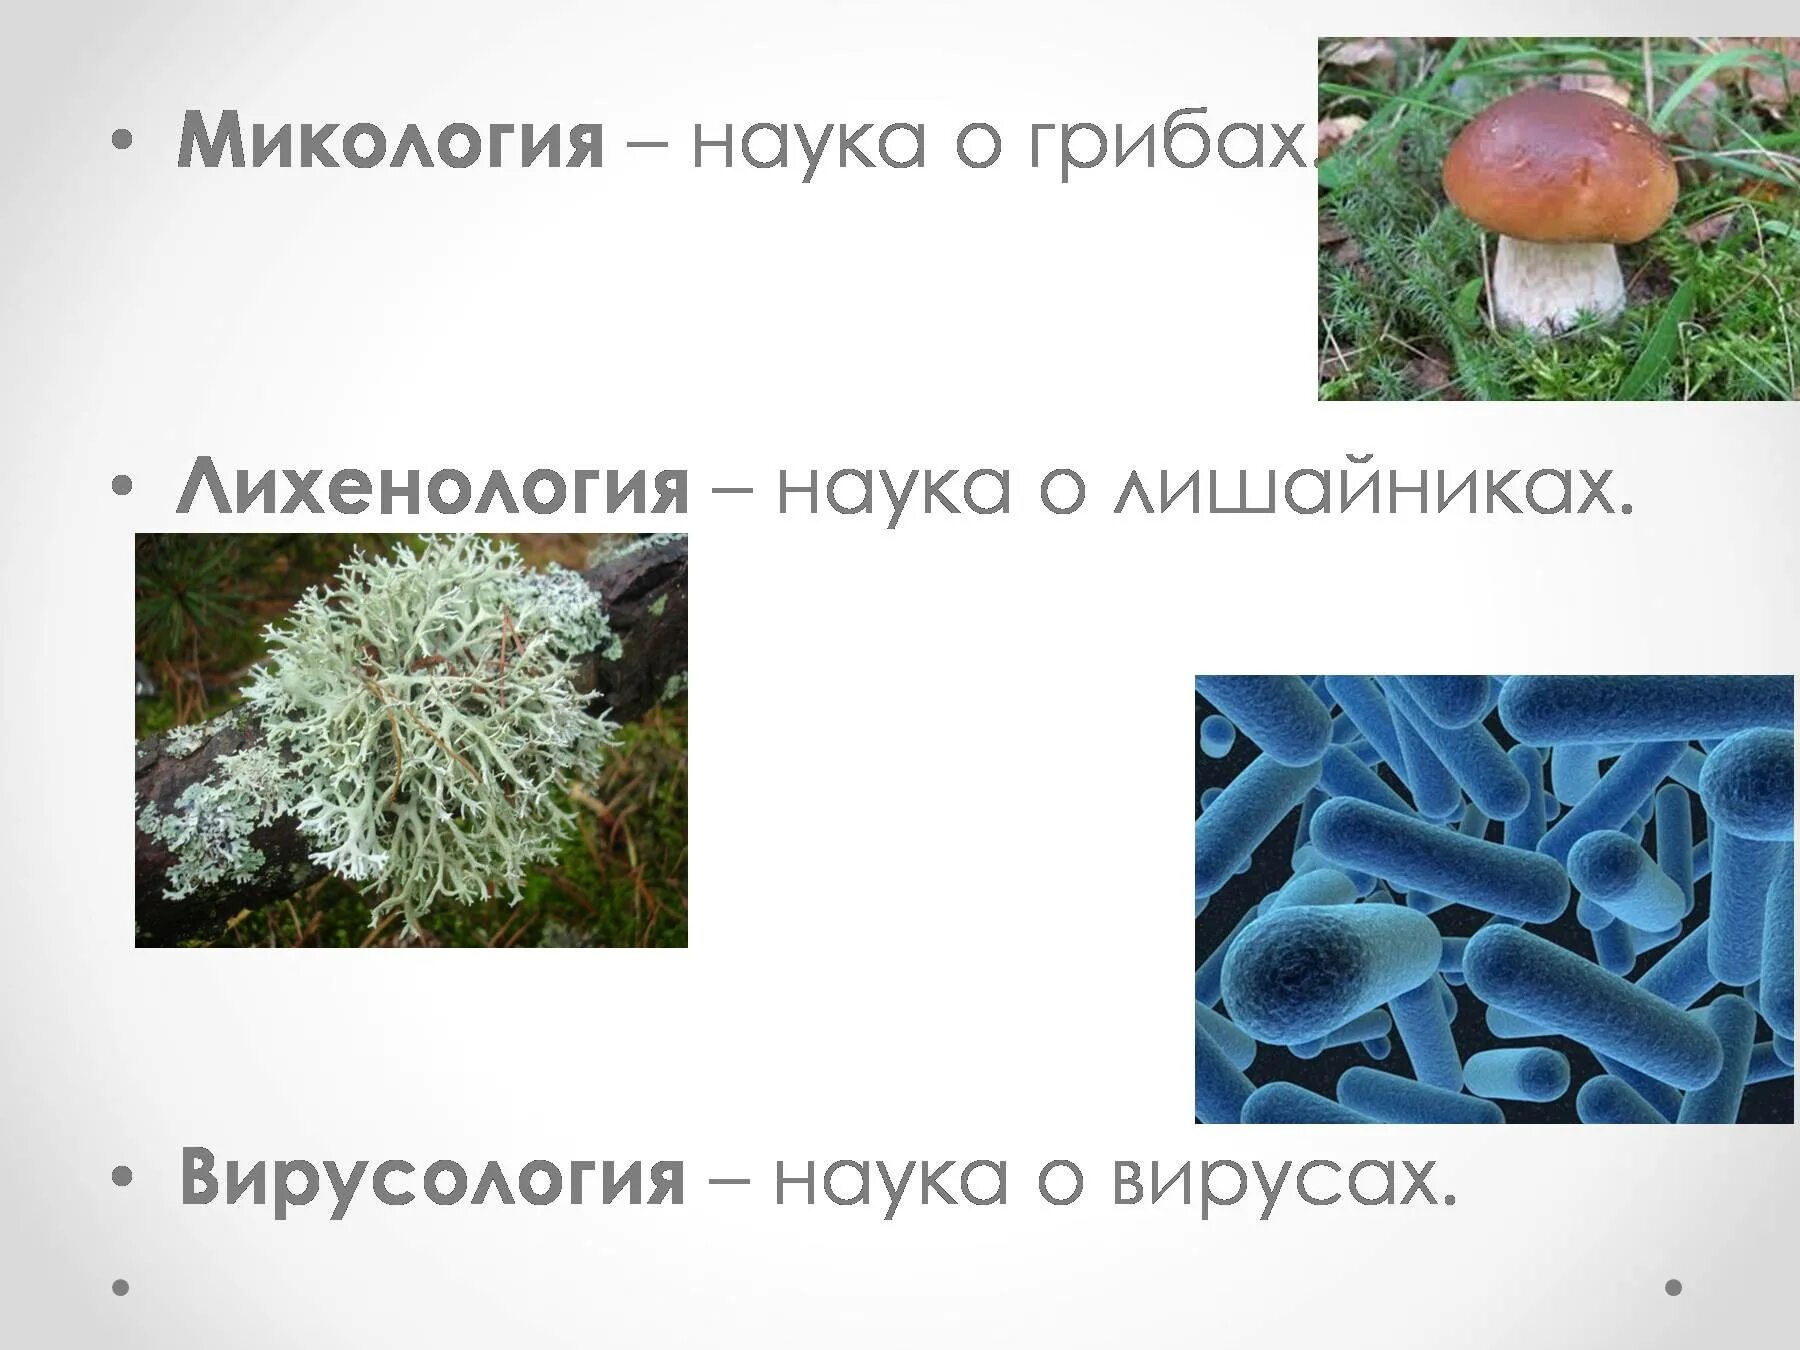 Наука которая изучает грибы. Микология наука о грибах. Микология грибы. Микология это в биологии. Микология изучает грибы.